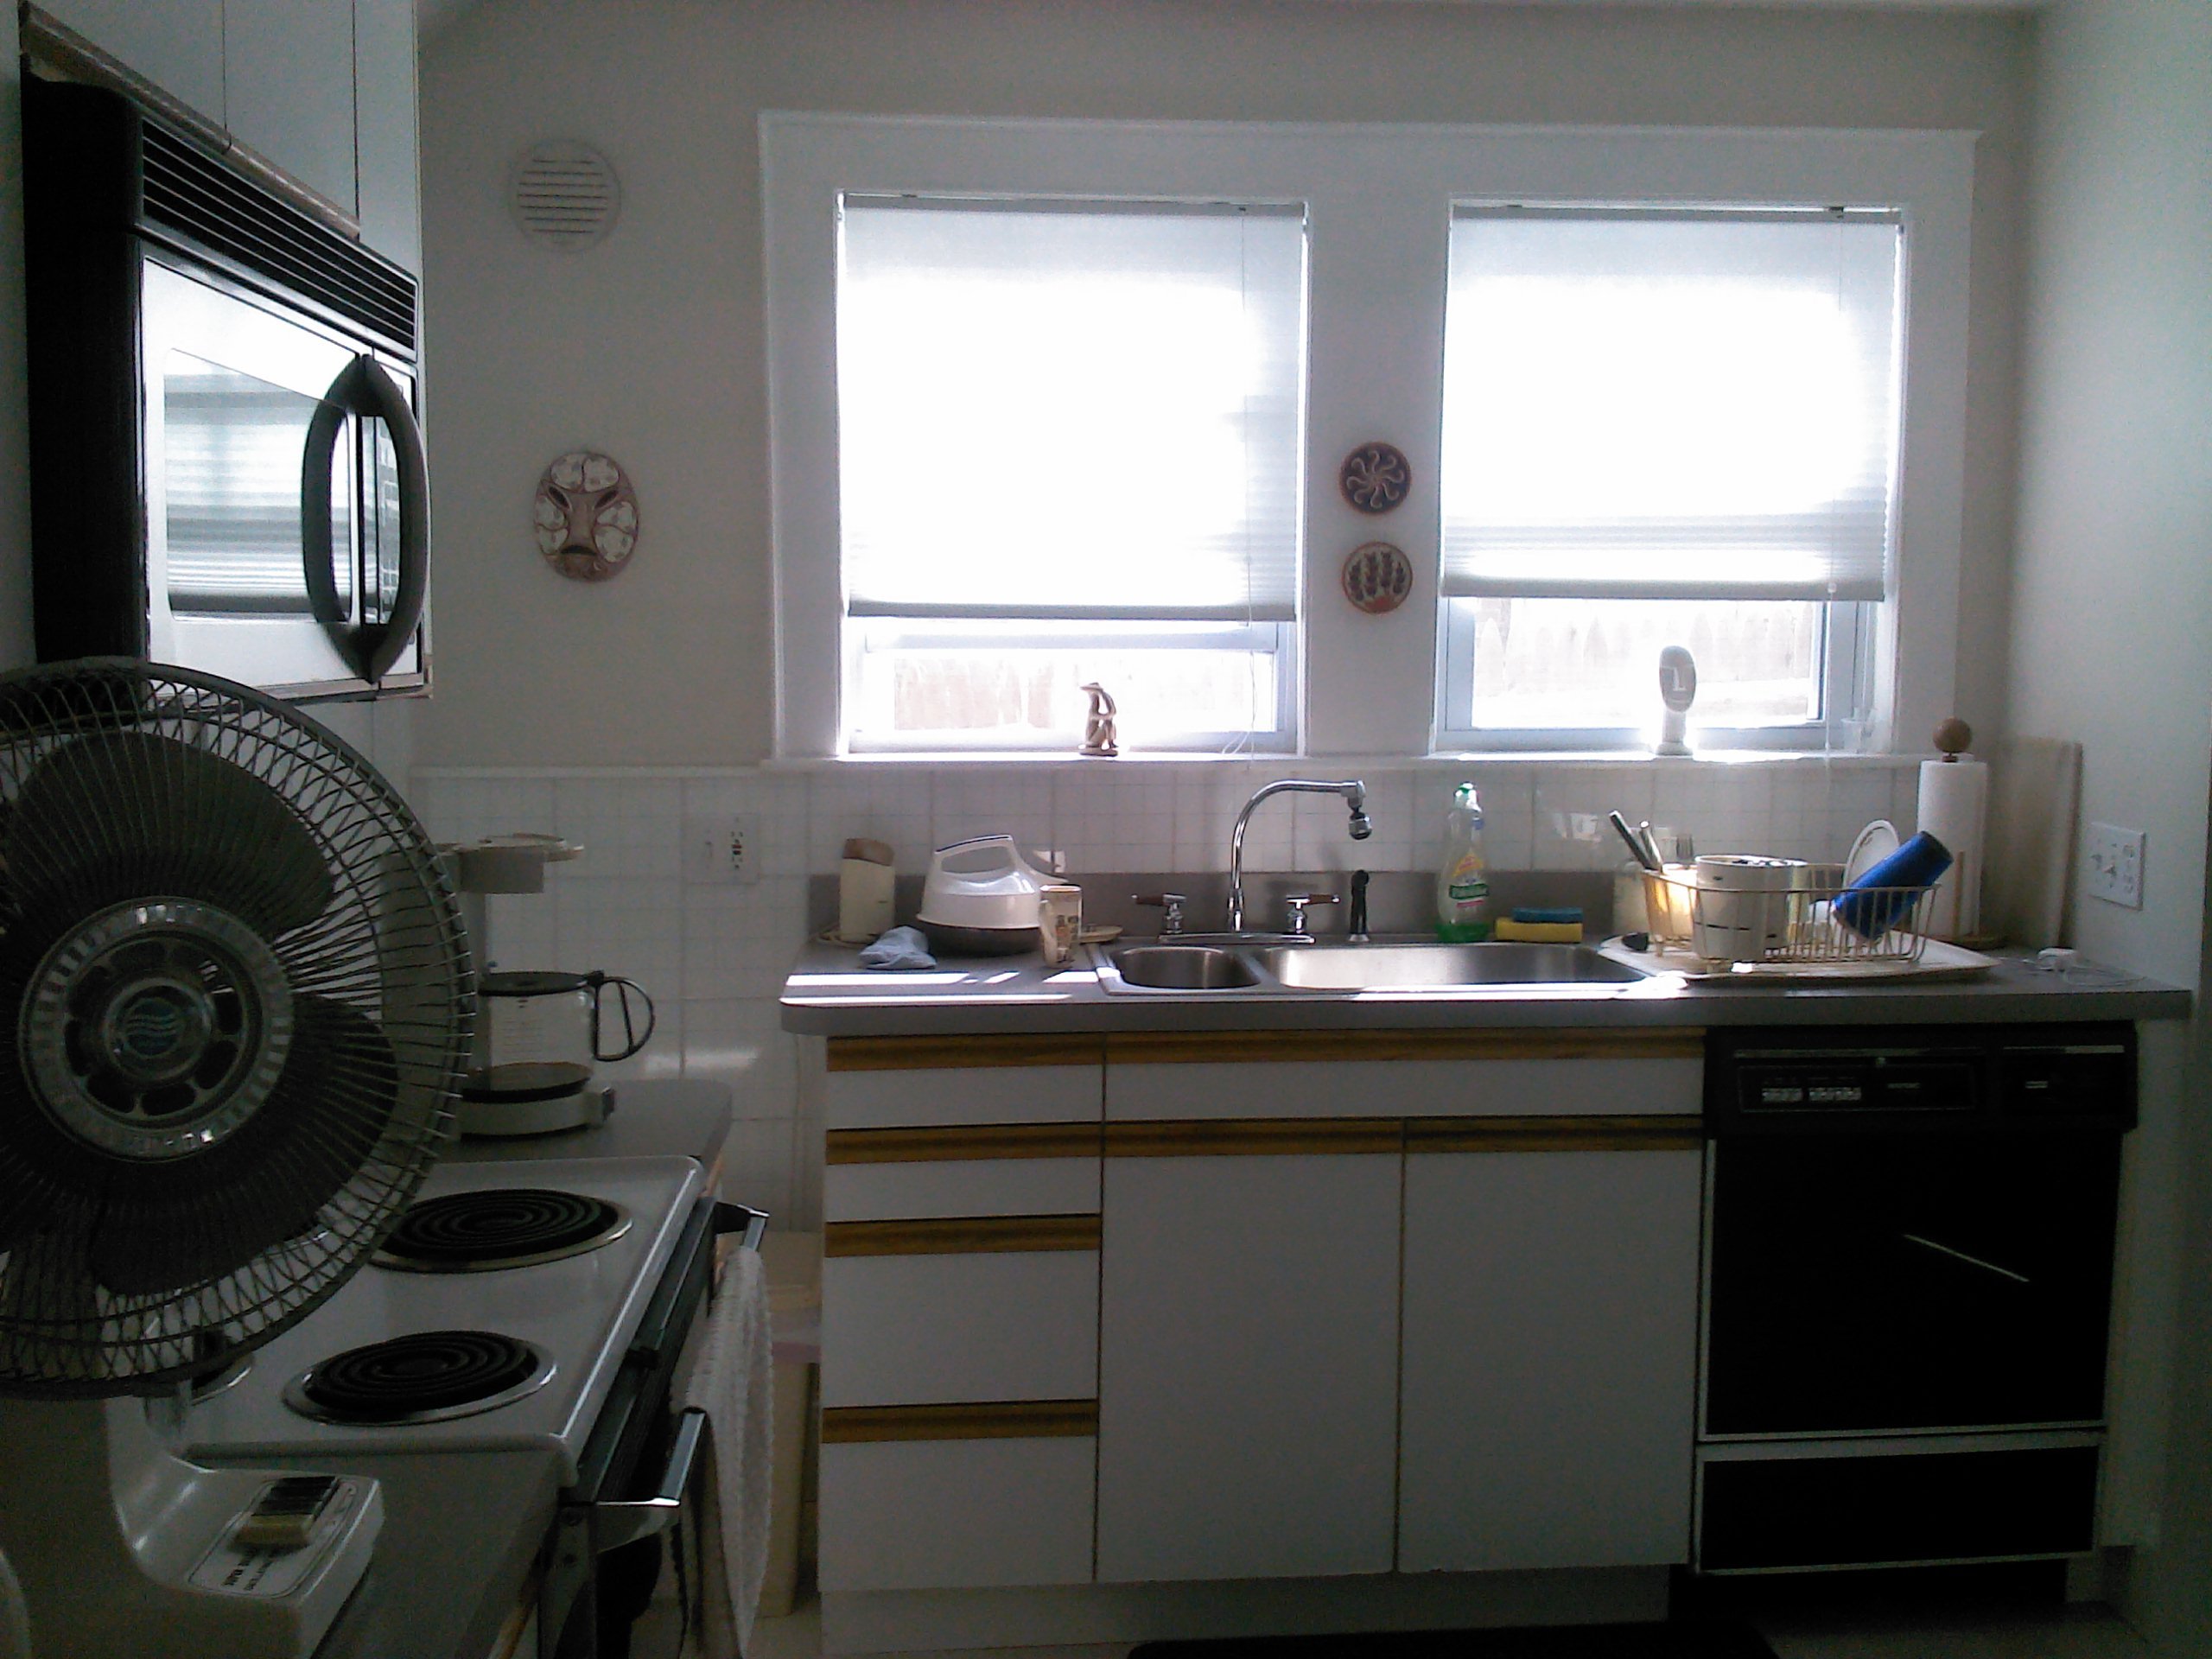 Large Kitchen Windows Design / Large Window Kitchen Space Interior